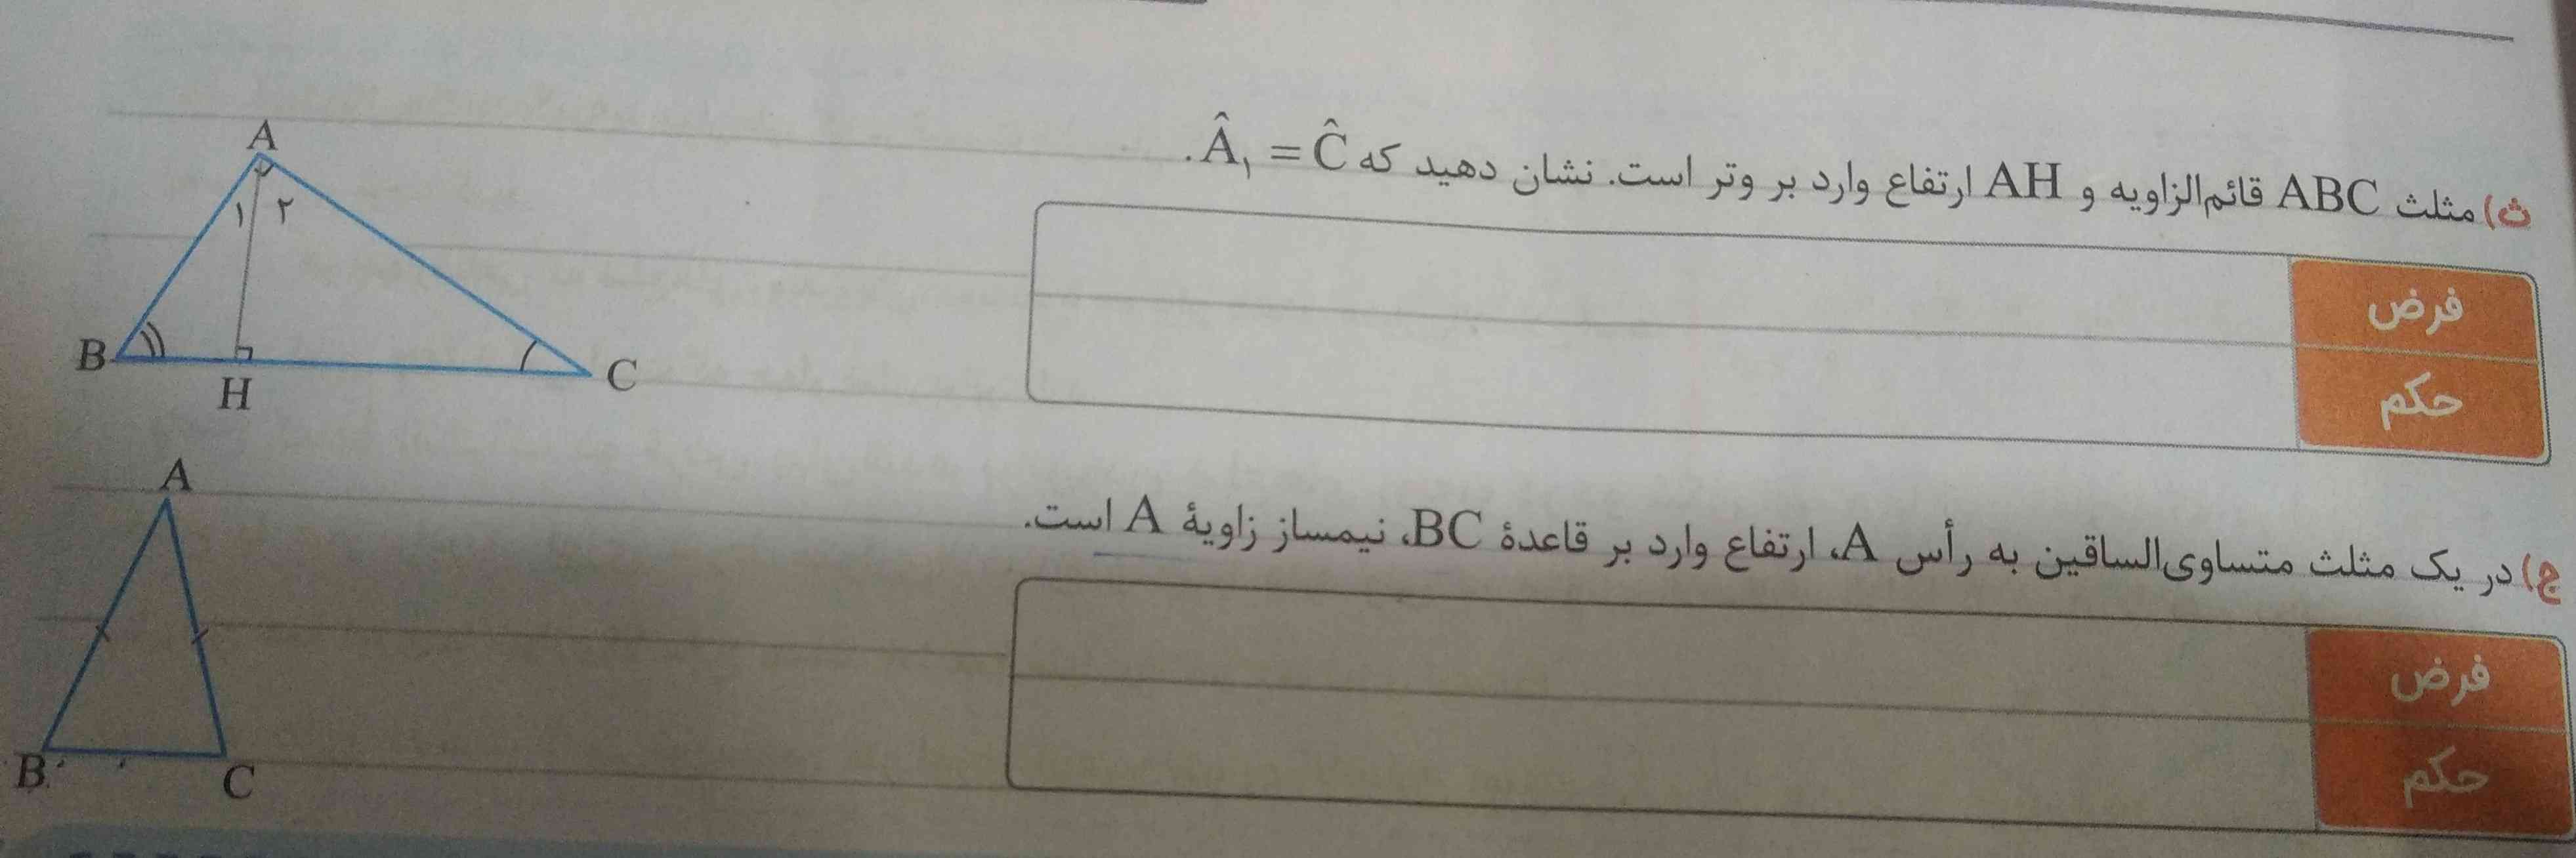 چه کسی میتونه این سوال ریاضی رو حل کنه؟ 